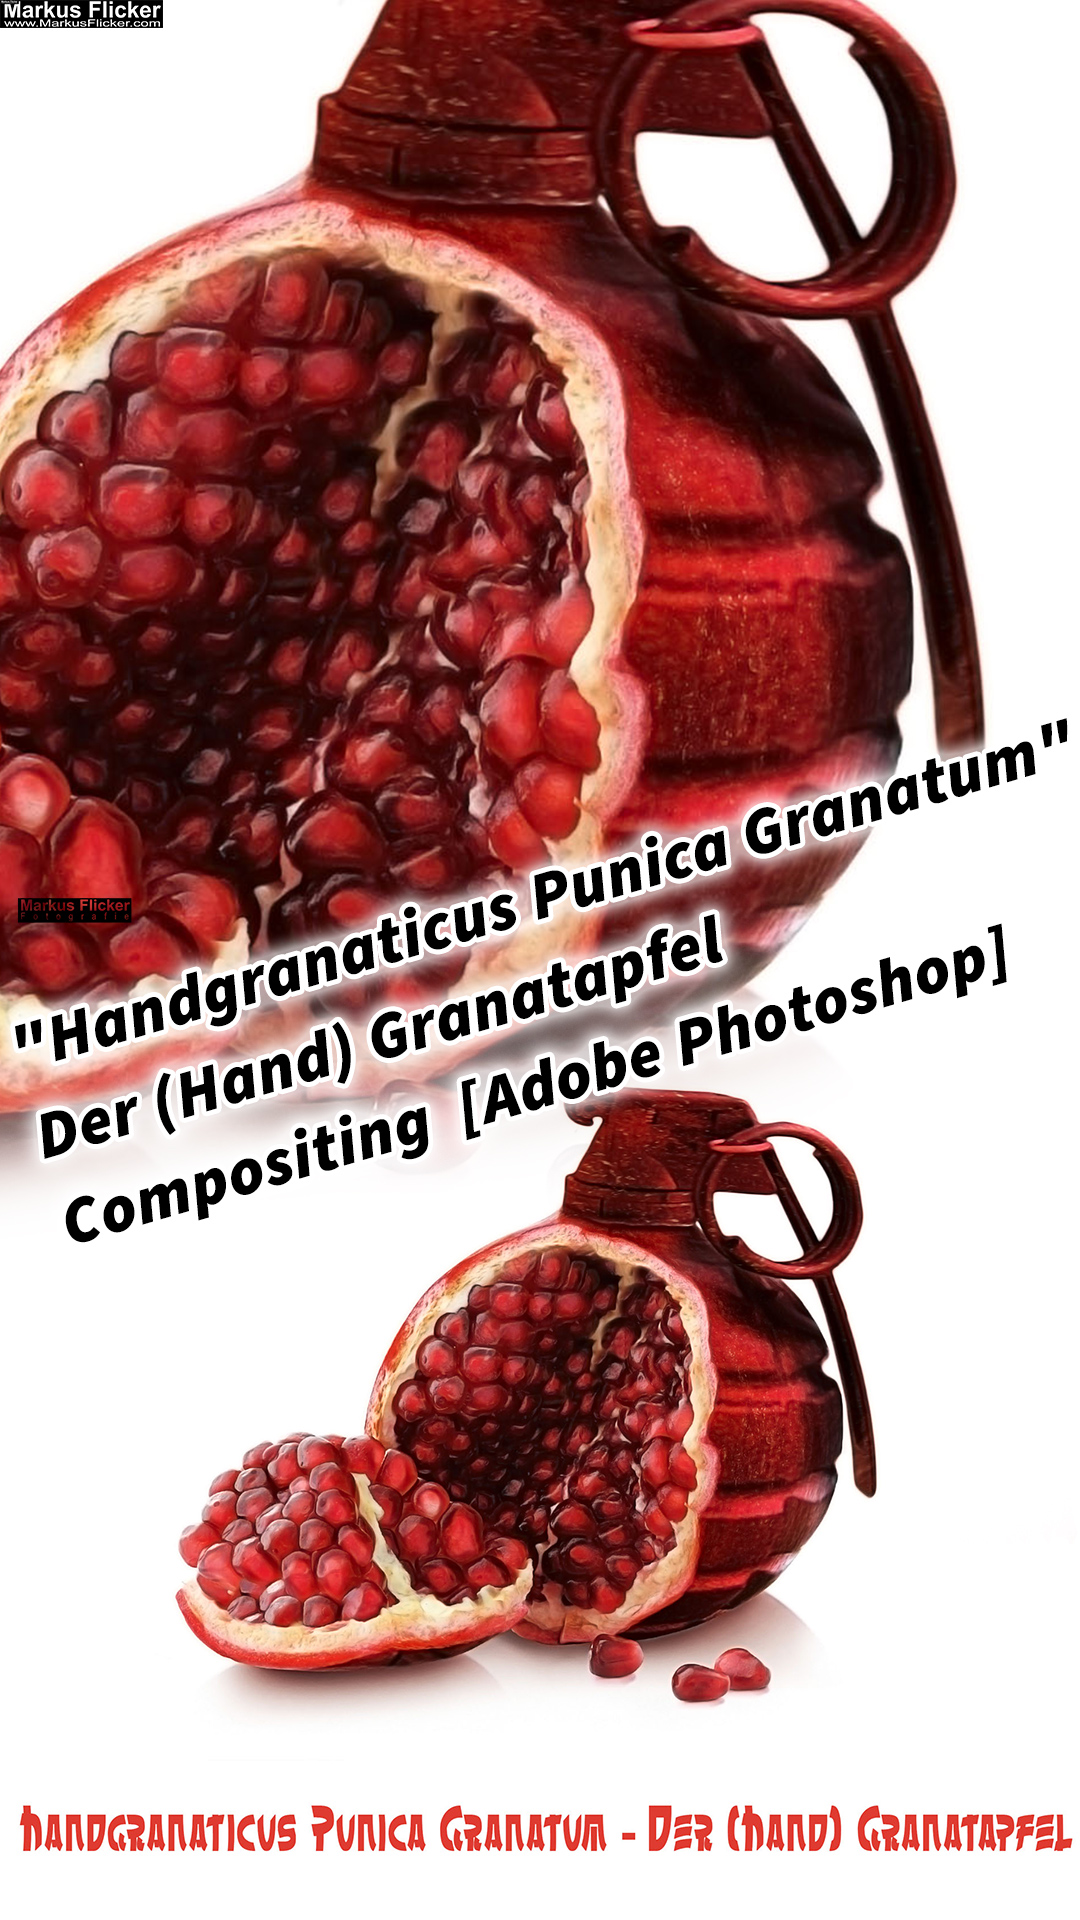 "Handgranaticus Punica Granatum" Der (Hand) Granatapfel Compositing [Adobe Photoshop]